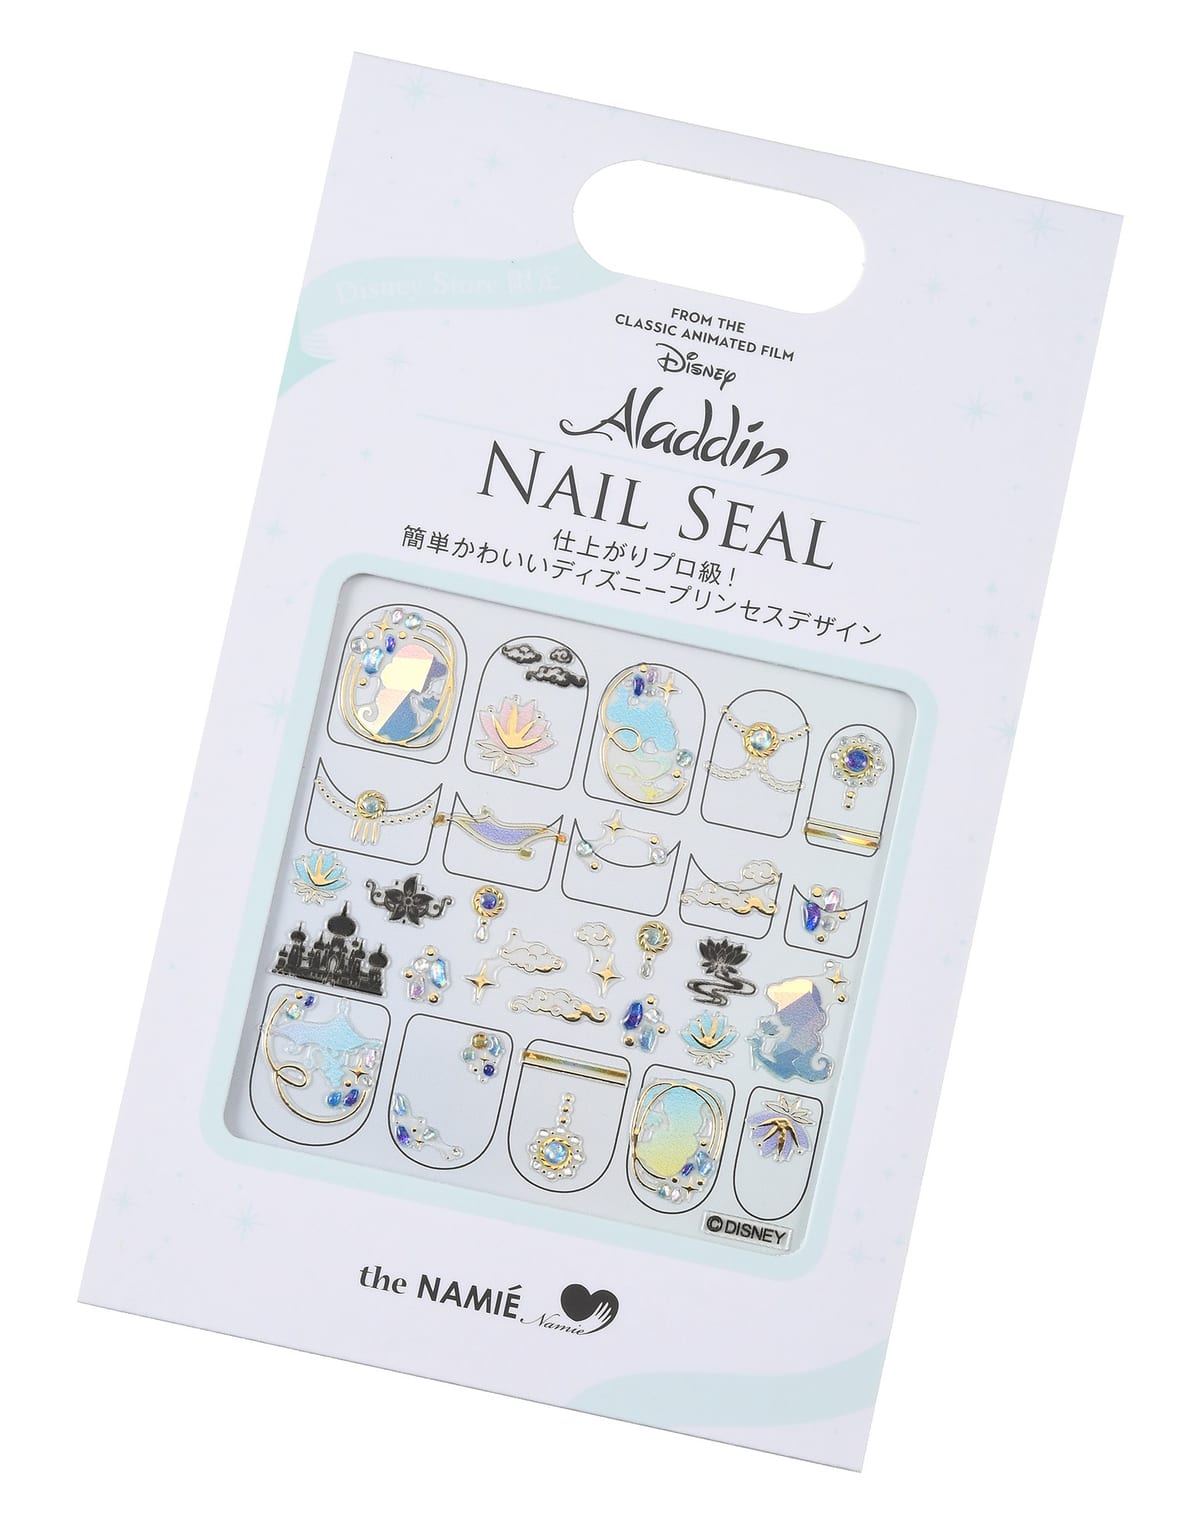 【the NAMIE nail art collection】アラジン ネイルシール ホログラムシルエット